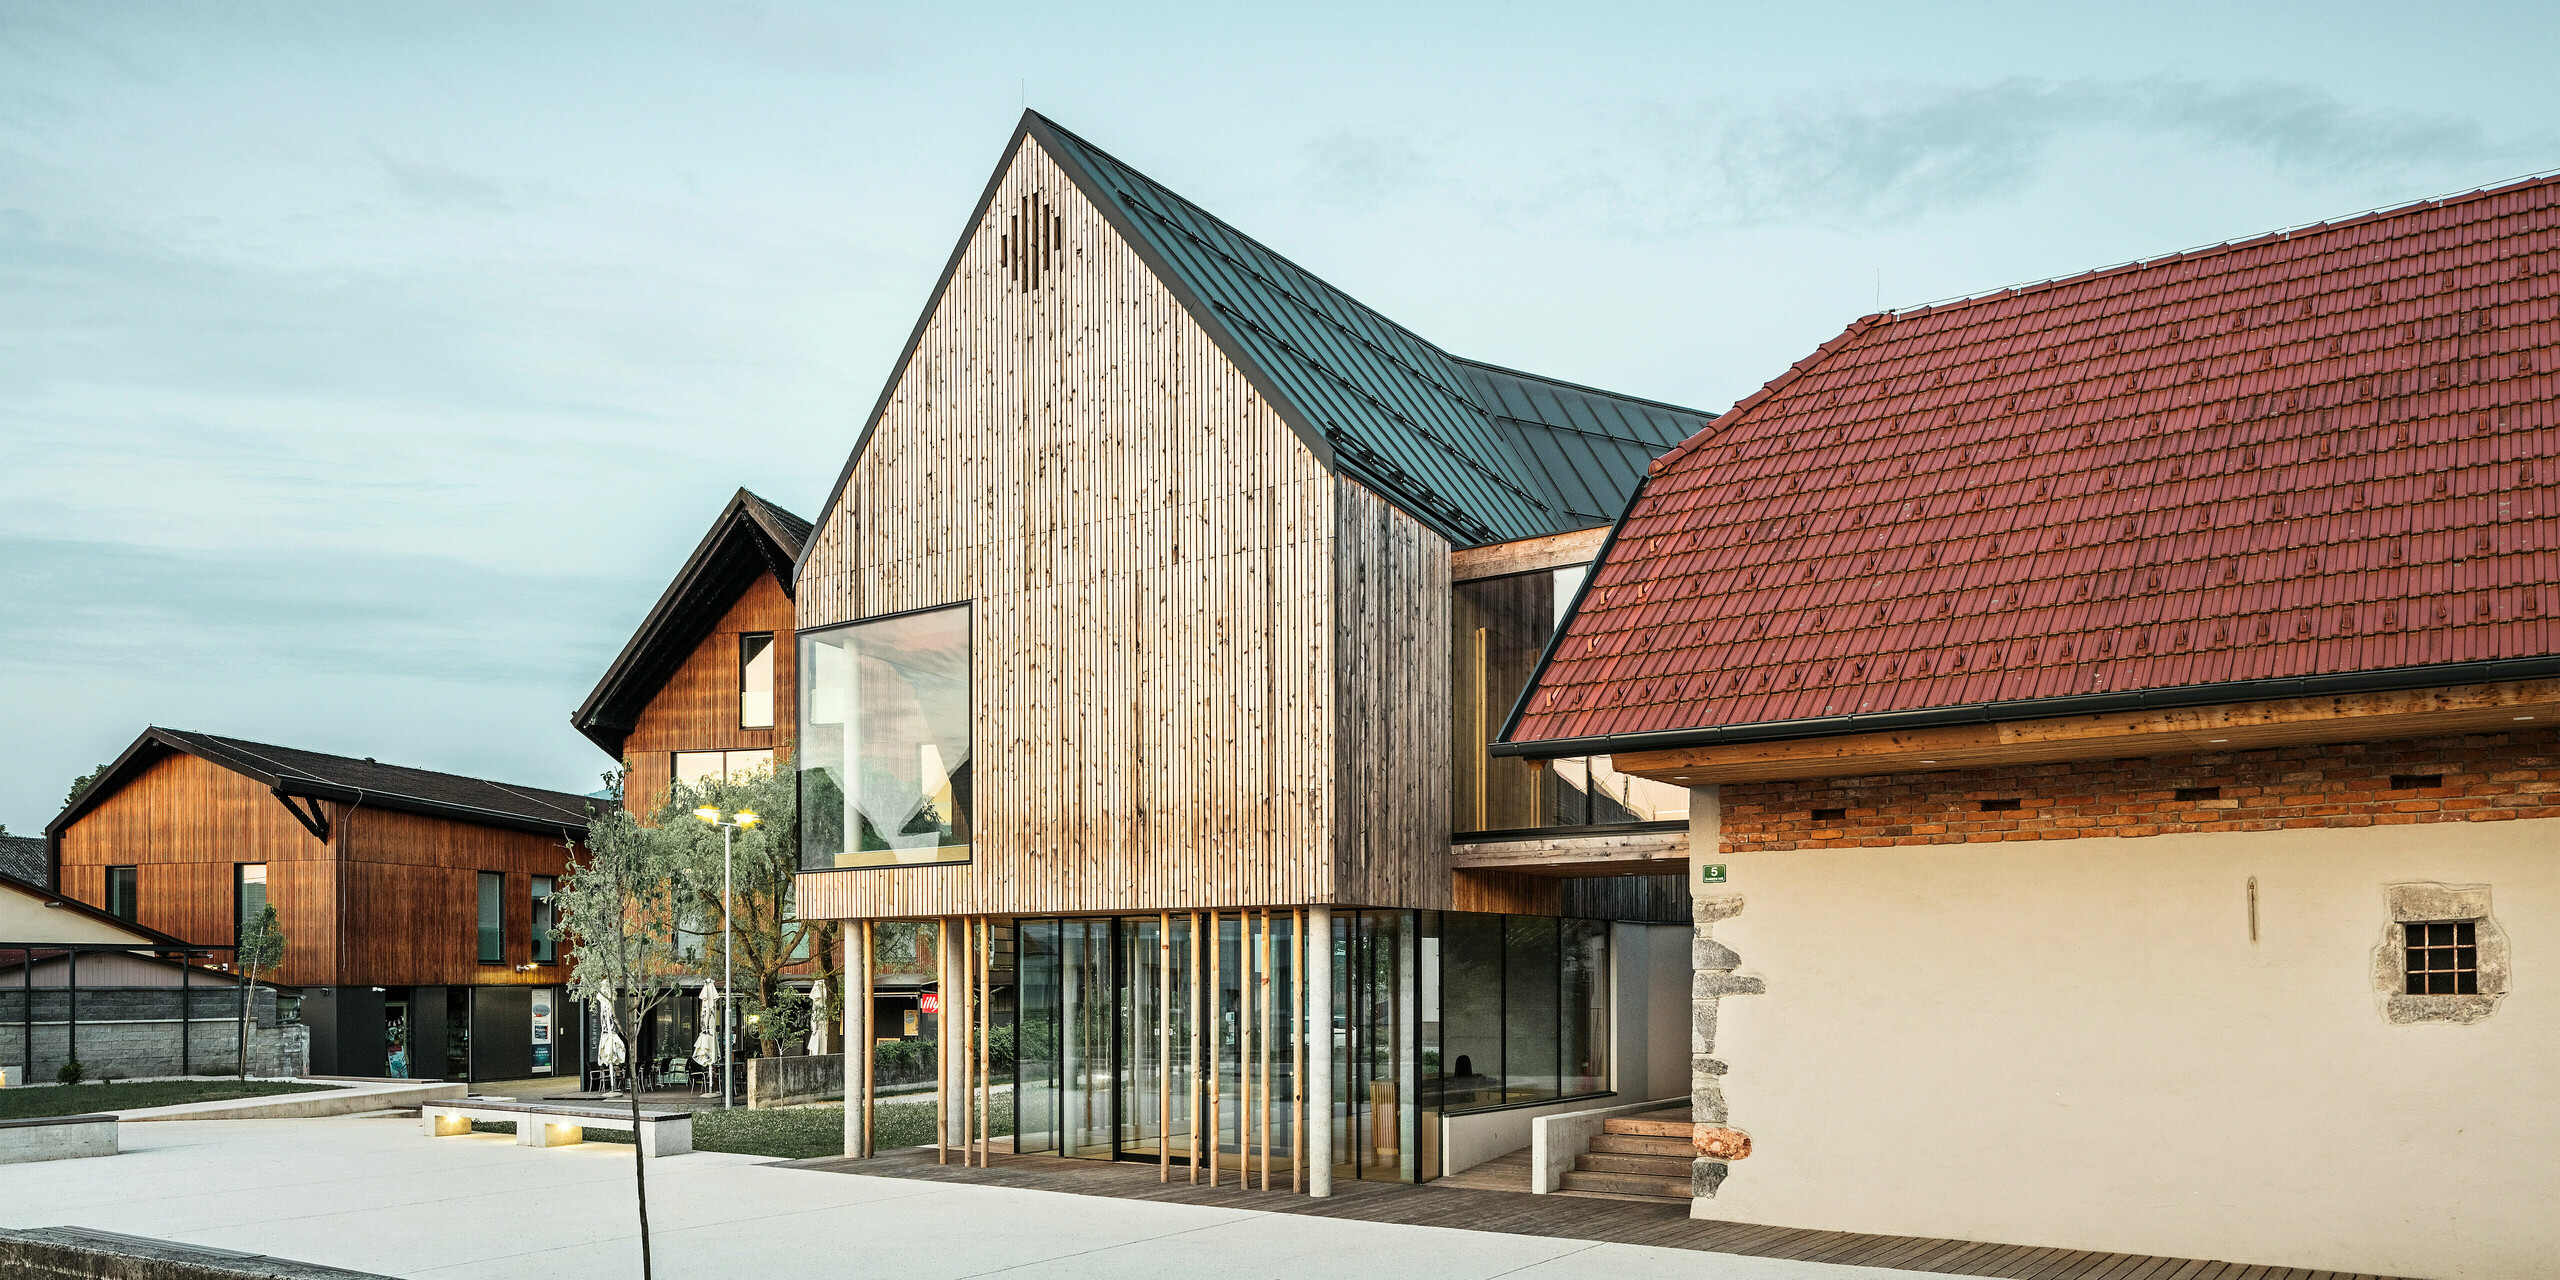 Pogled na center za obiskovalce na Igu v Sloveniji z vpadljivo streho PREFALZ v  P.10 temno sivi barvi, ki jasno izstopa iz okoliške tradicionalne rdeče strešne kritine. Kombinacija starega in novega, ki jo predstavljata sosednji zid z majhnim oknom in sodobna lesena konstrukcija z velikimi steklenimi površinami, priča o premišljeni simbiozi regionalne tradicije in sodobne arhitekture. Elegantna osvetlitev poudarja vabljivo vzdušje vhodnega prostora, kot je predstavljeno v knjigi PREFARENZEN 2023.